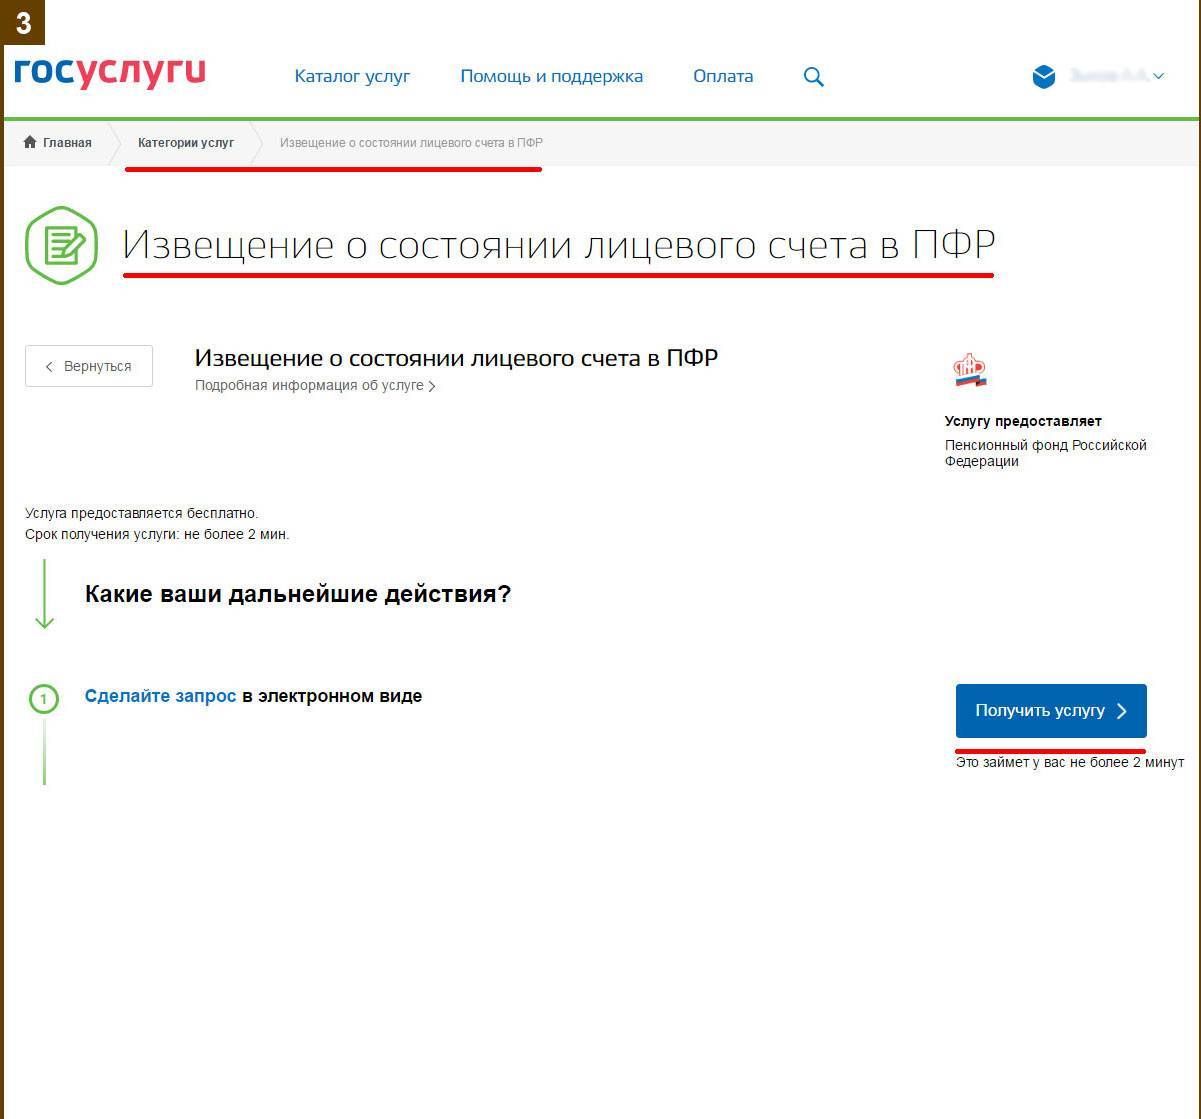 Как узнать свой пенсионный фонд по адресу? :: businessman.ru